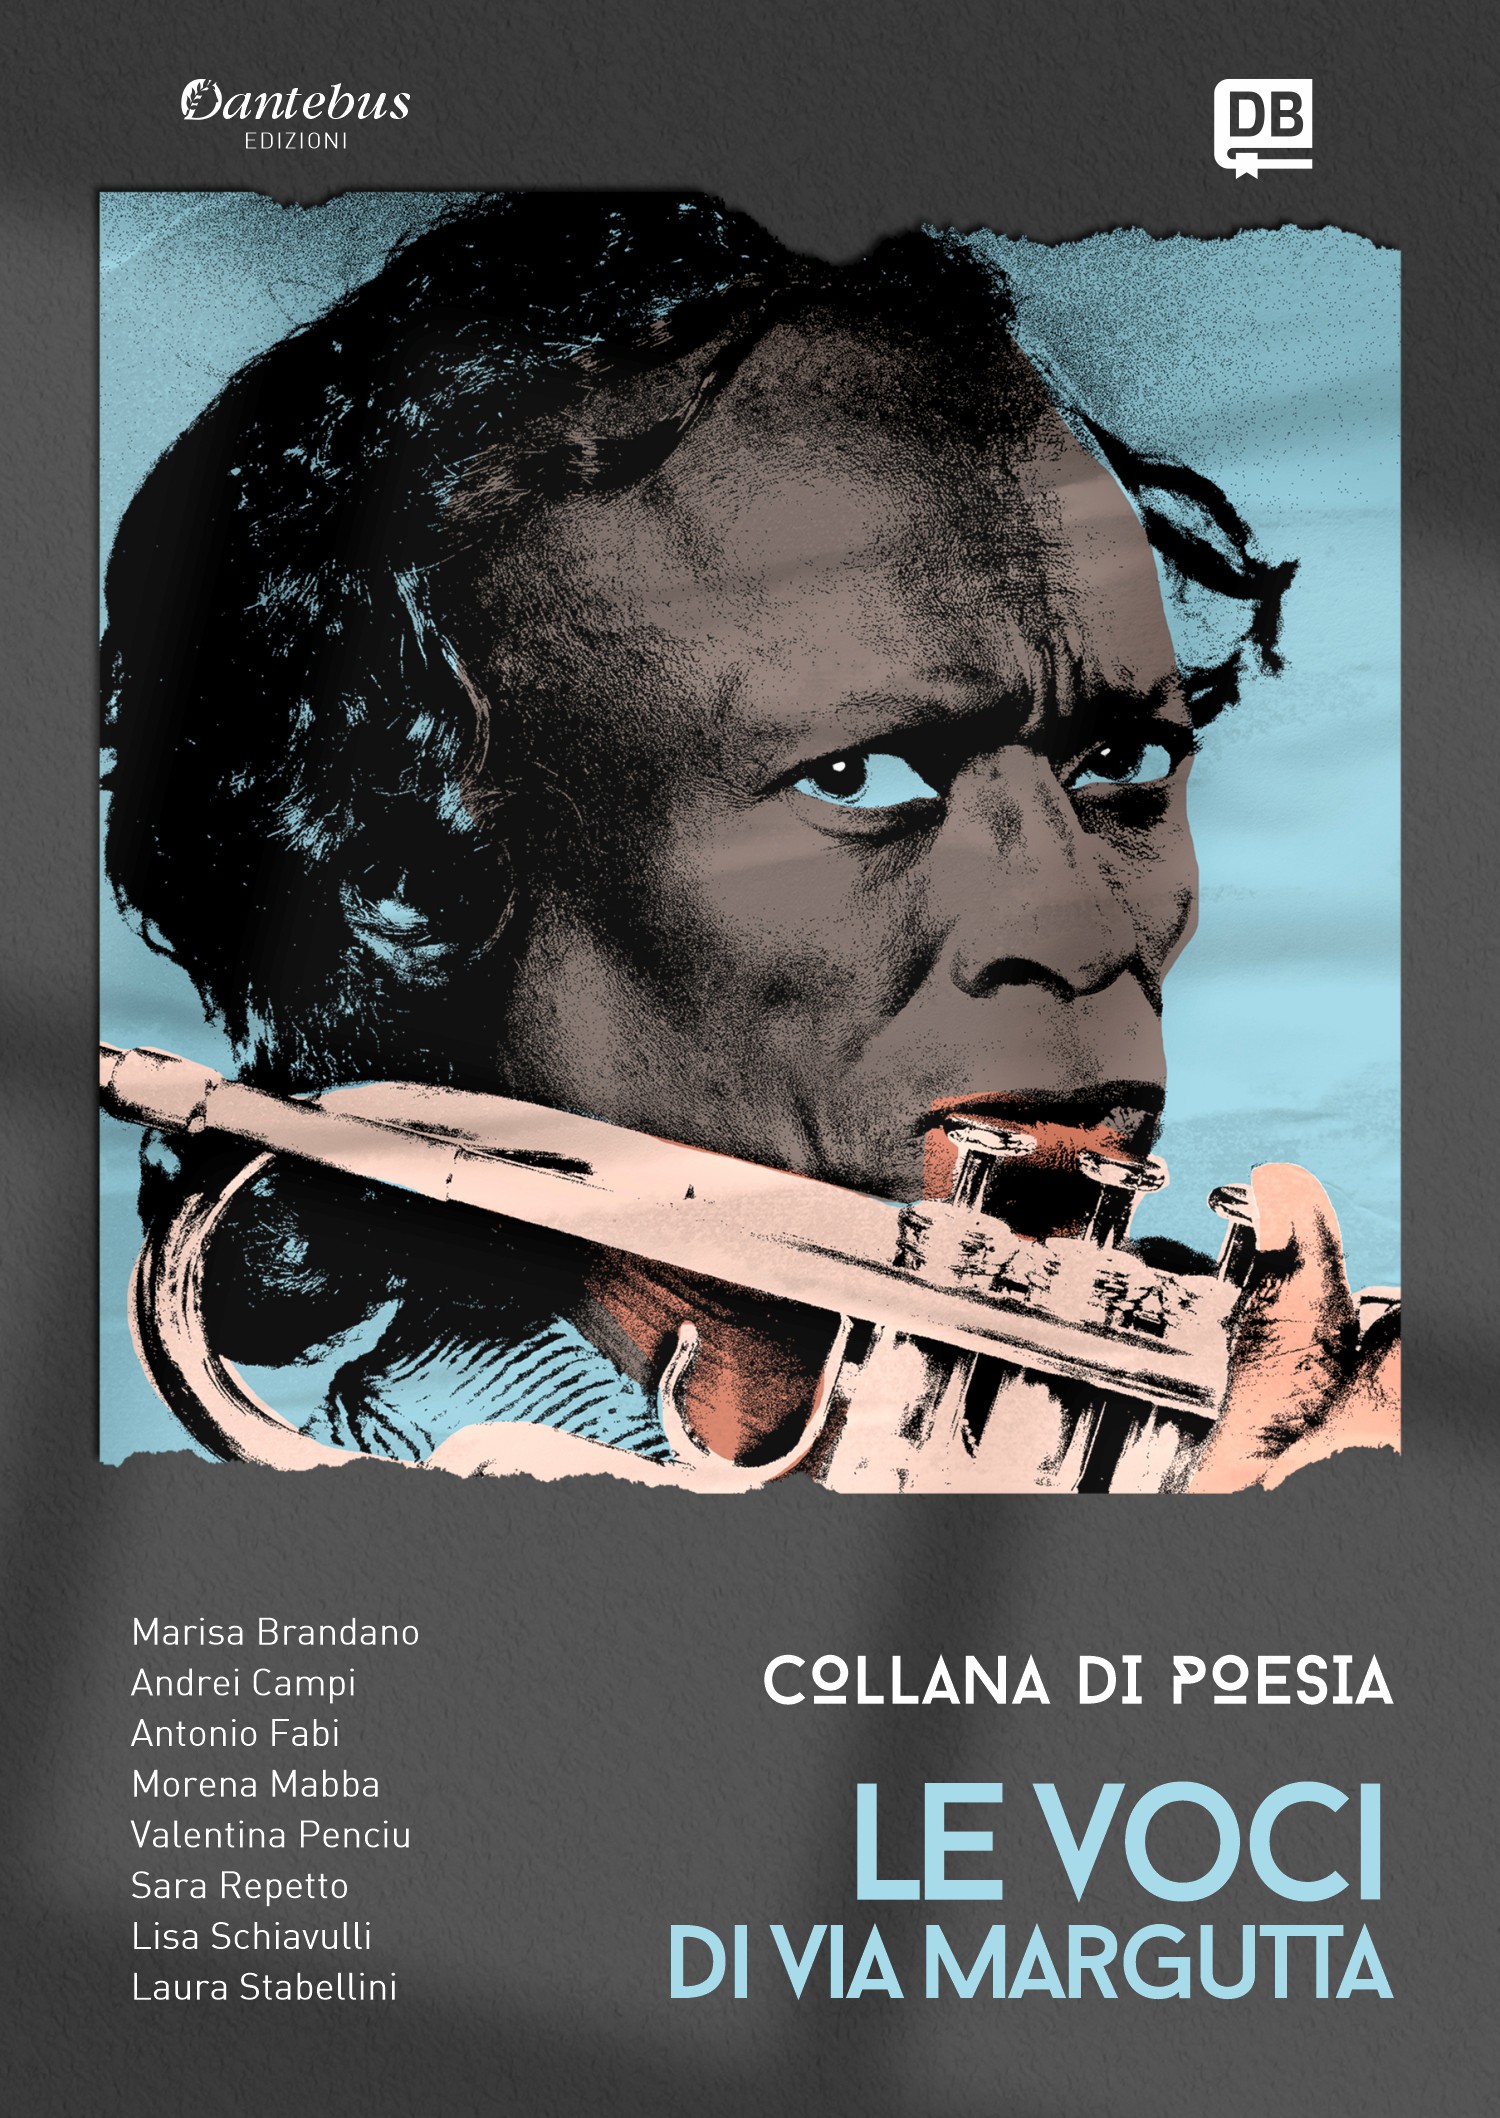 Collana Poetica Le Voci di Via Margutta vol. 9 - Librerie.coop